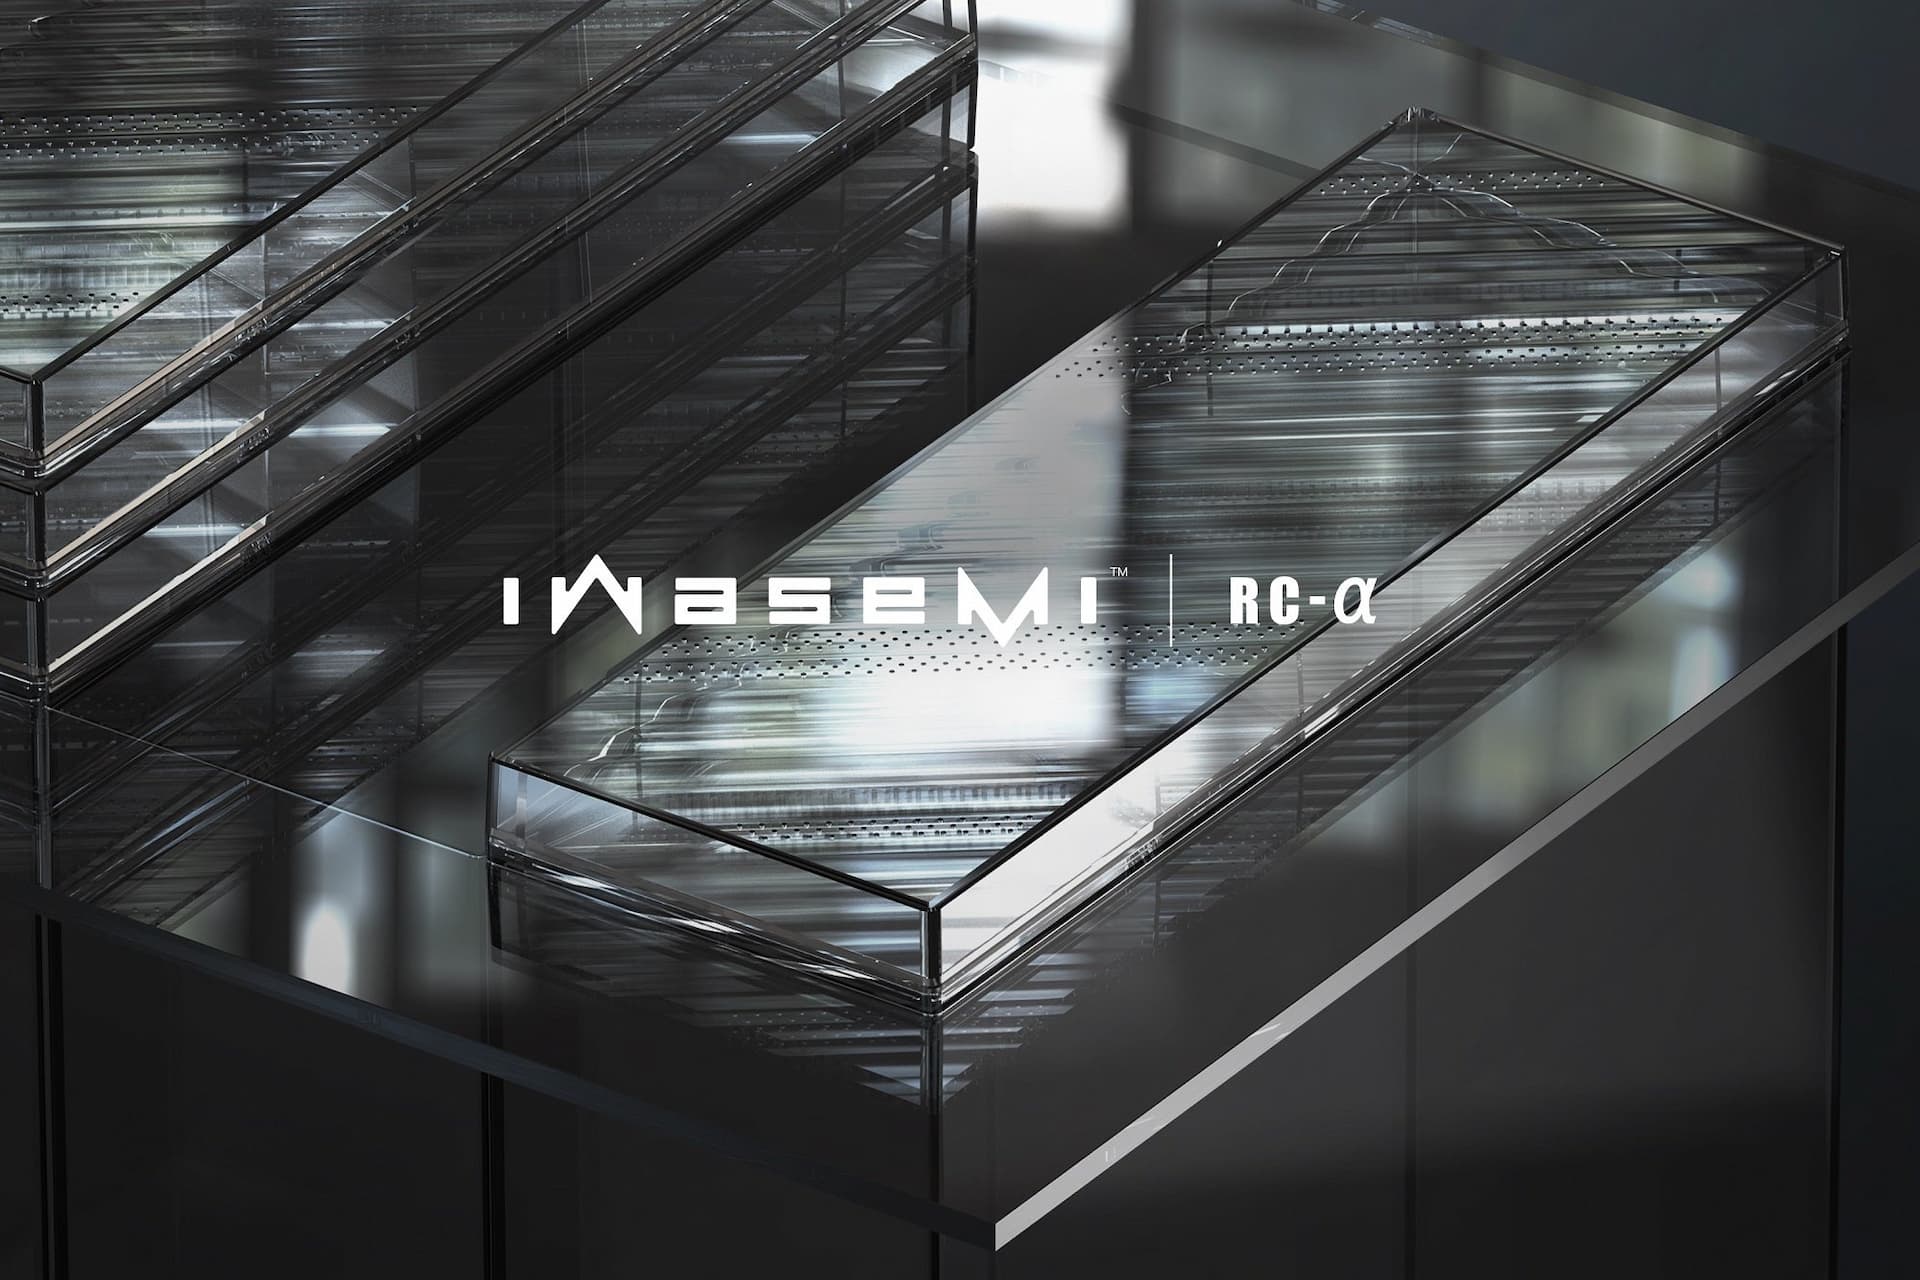 業務提携先のピクシーダストテクノロジーズがガラスと調和する透明吸音材「iwasemi RC-α」を開発、乃村工藝社は意匠・設計に関してサポート